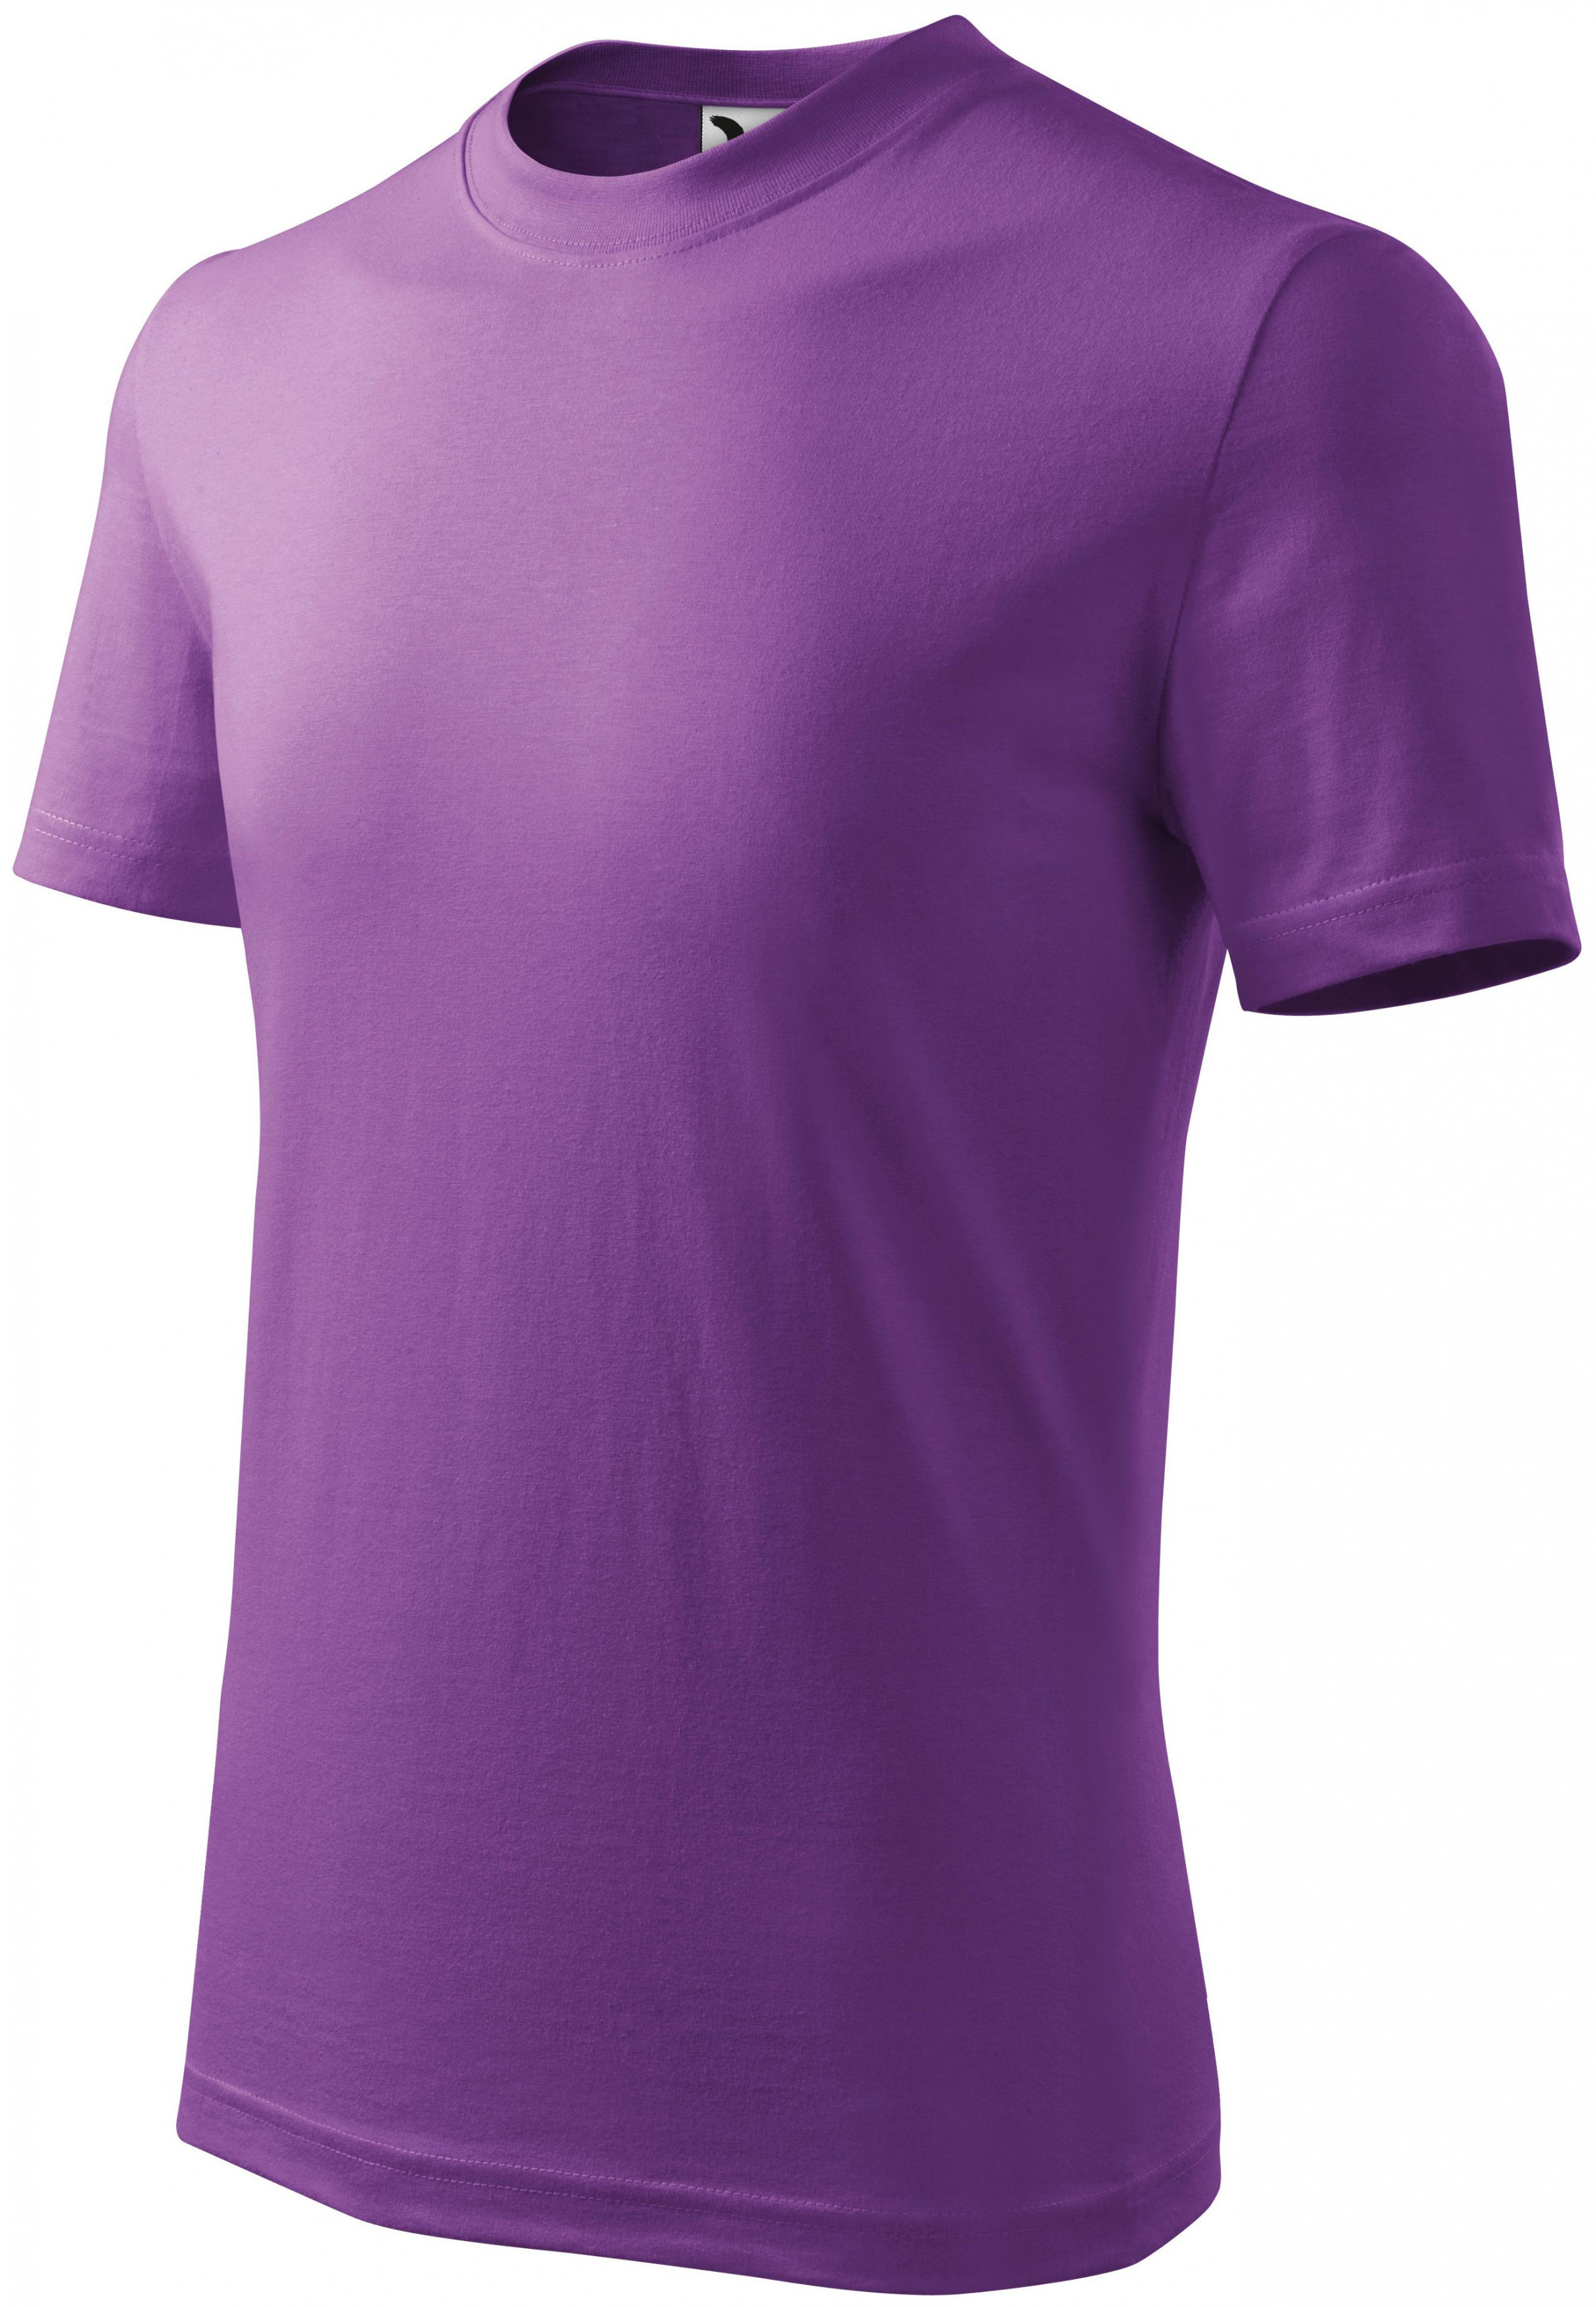 Detské tričko jednoduché, fialová, 122cm / 6rokov